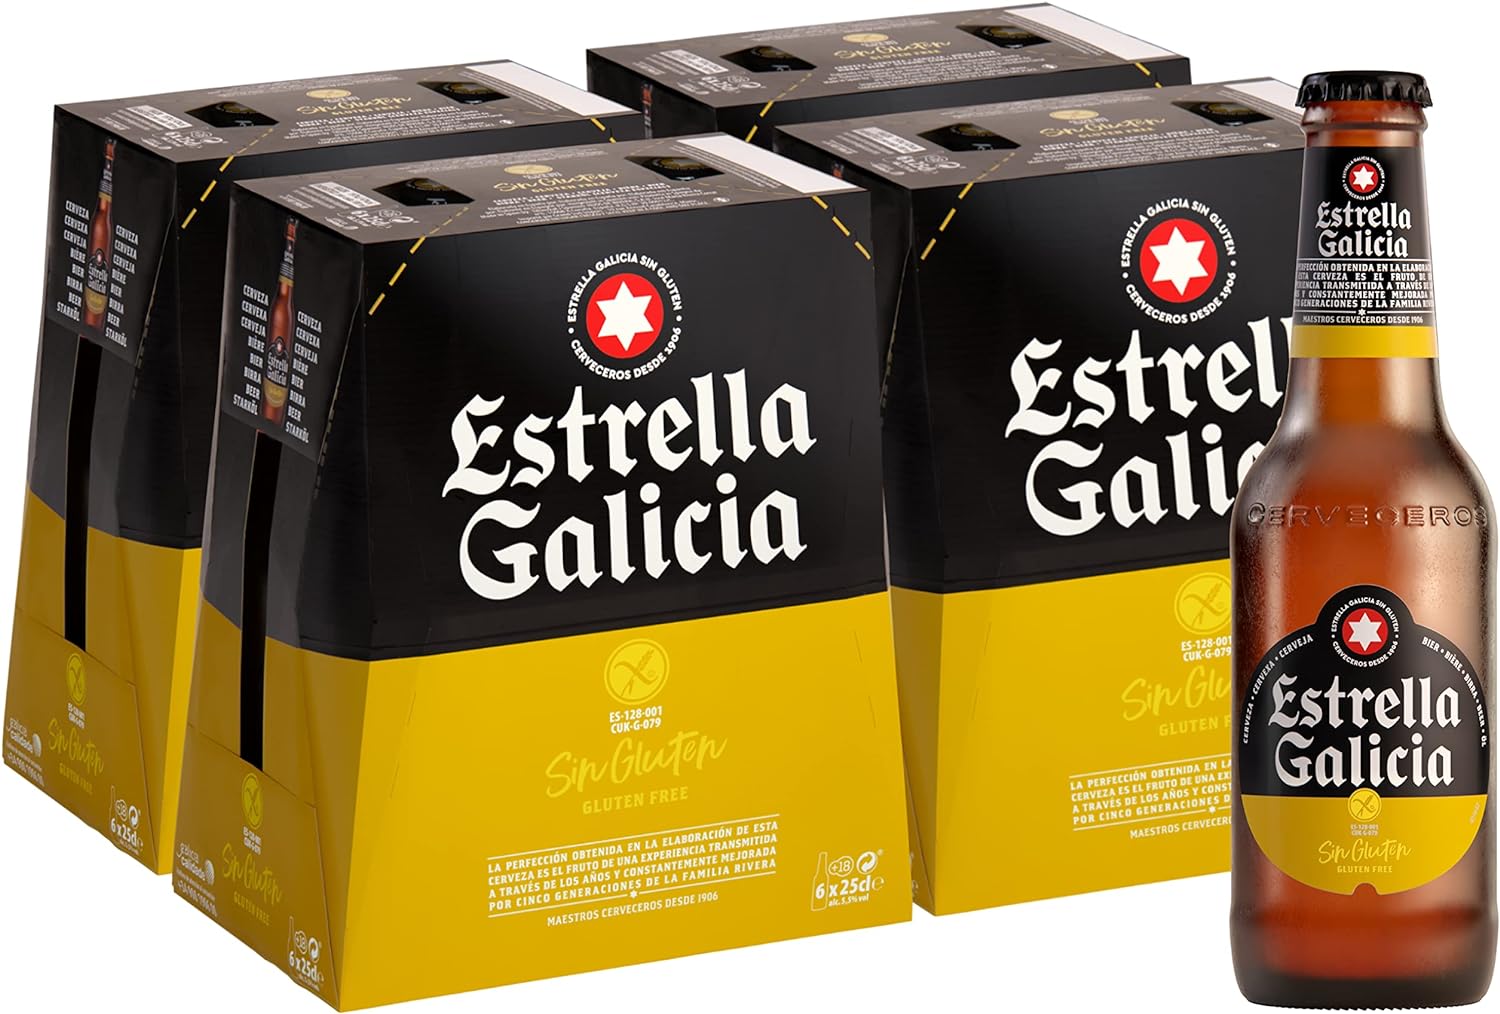 Estrella Galicia Gluten Free